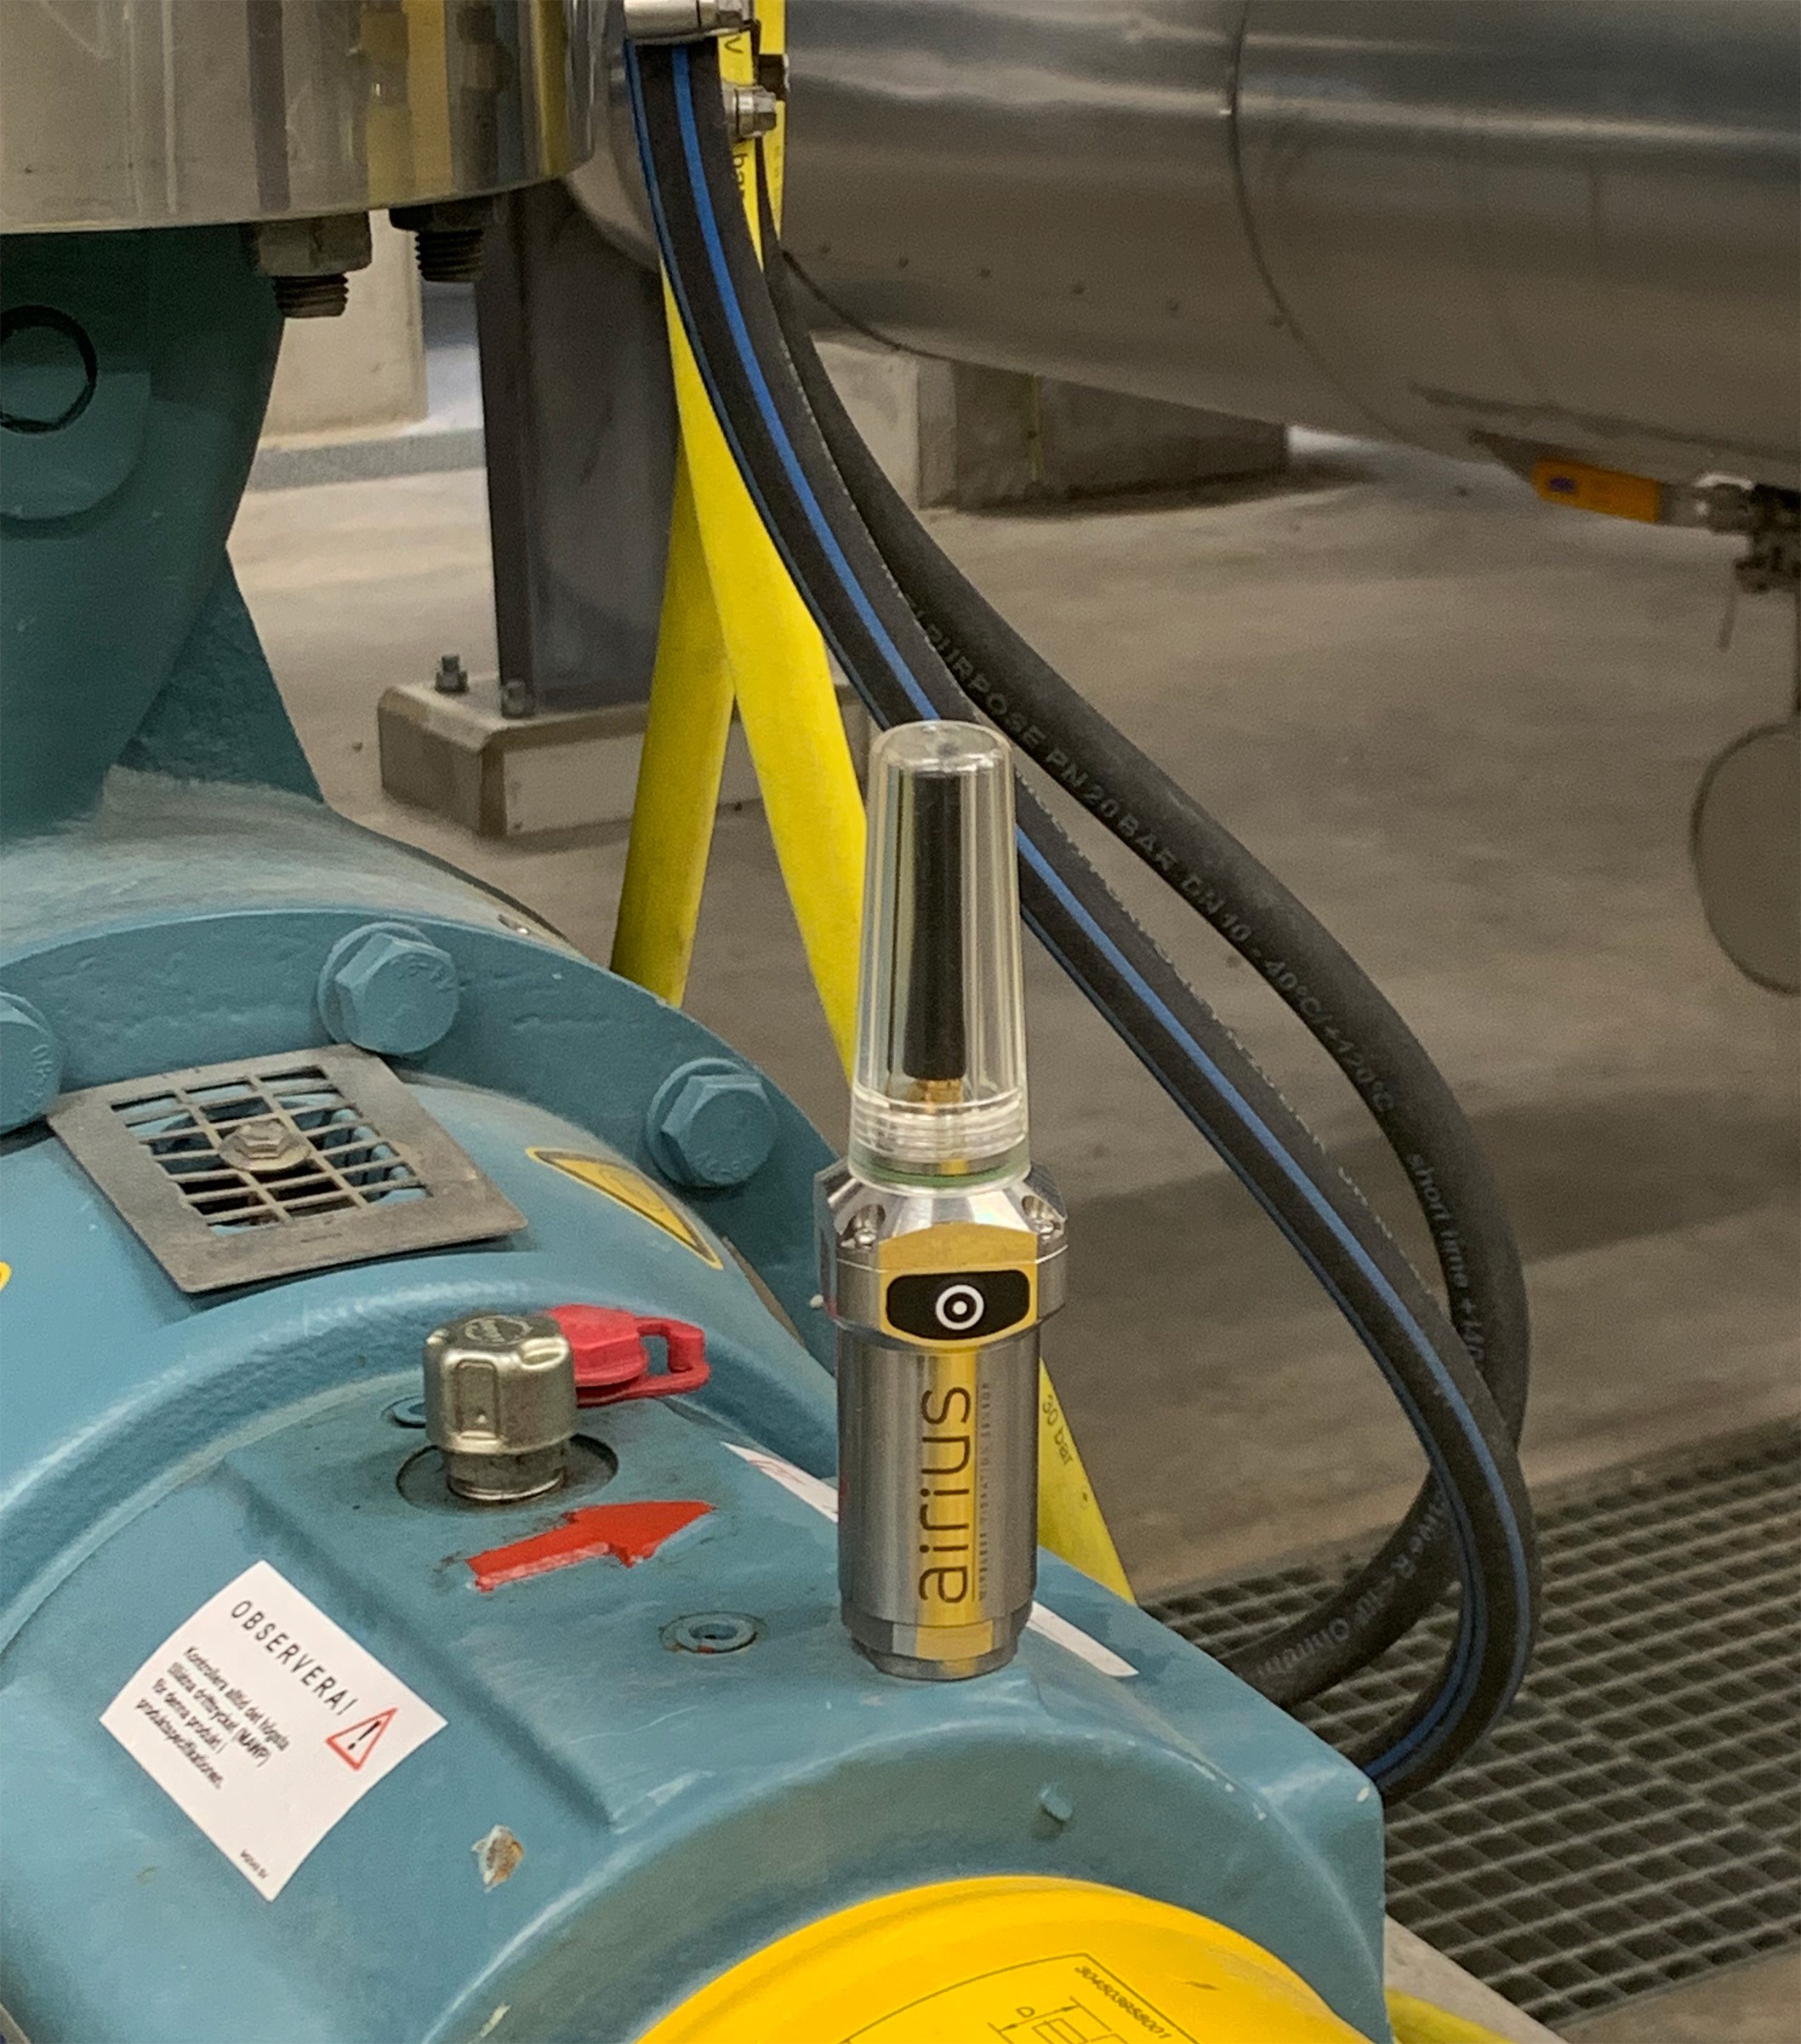 Closeup of the Airius sensor in industrial environment